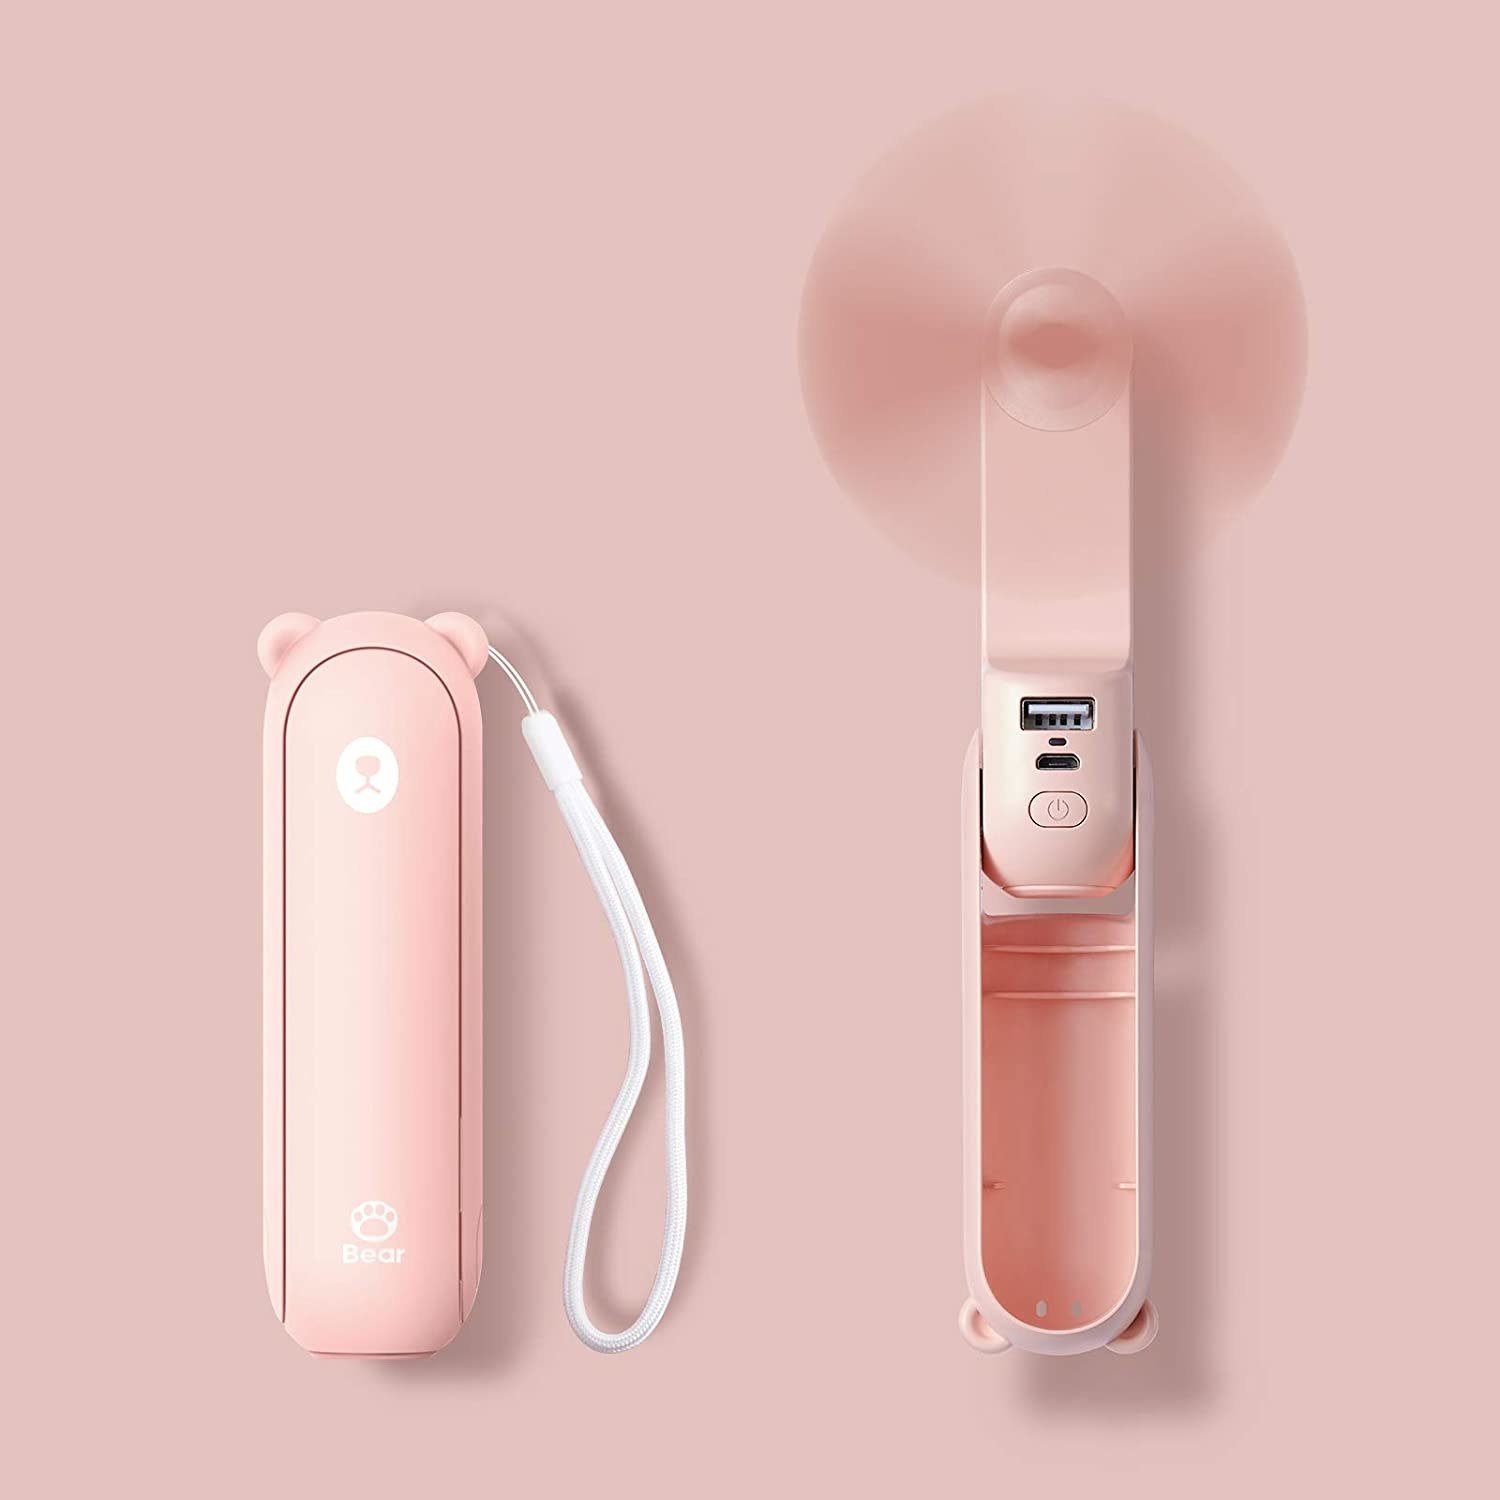 mini fan in blush pink